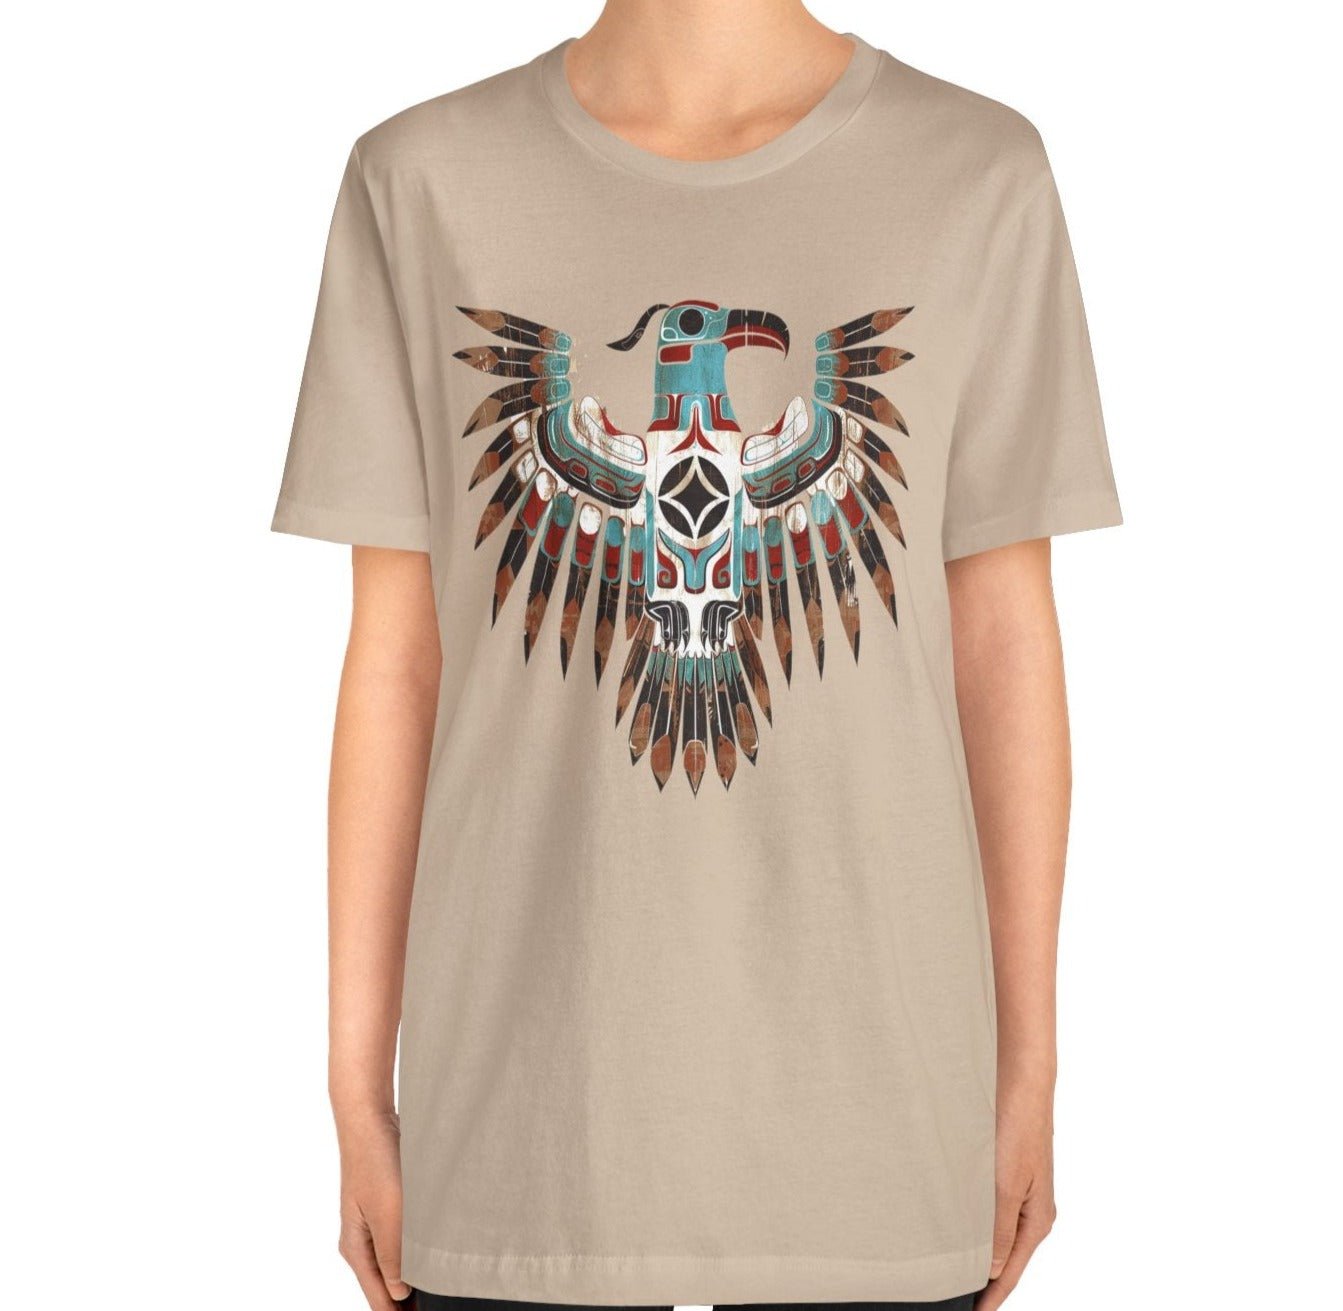 Native American Shirt, Thunderbird Art Shirt, Indigenous Art, Boho Spirt Guide Shirt - FlooredByArt